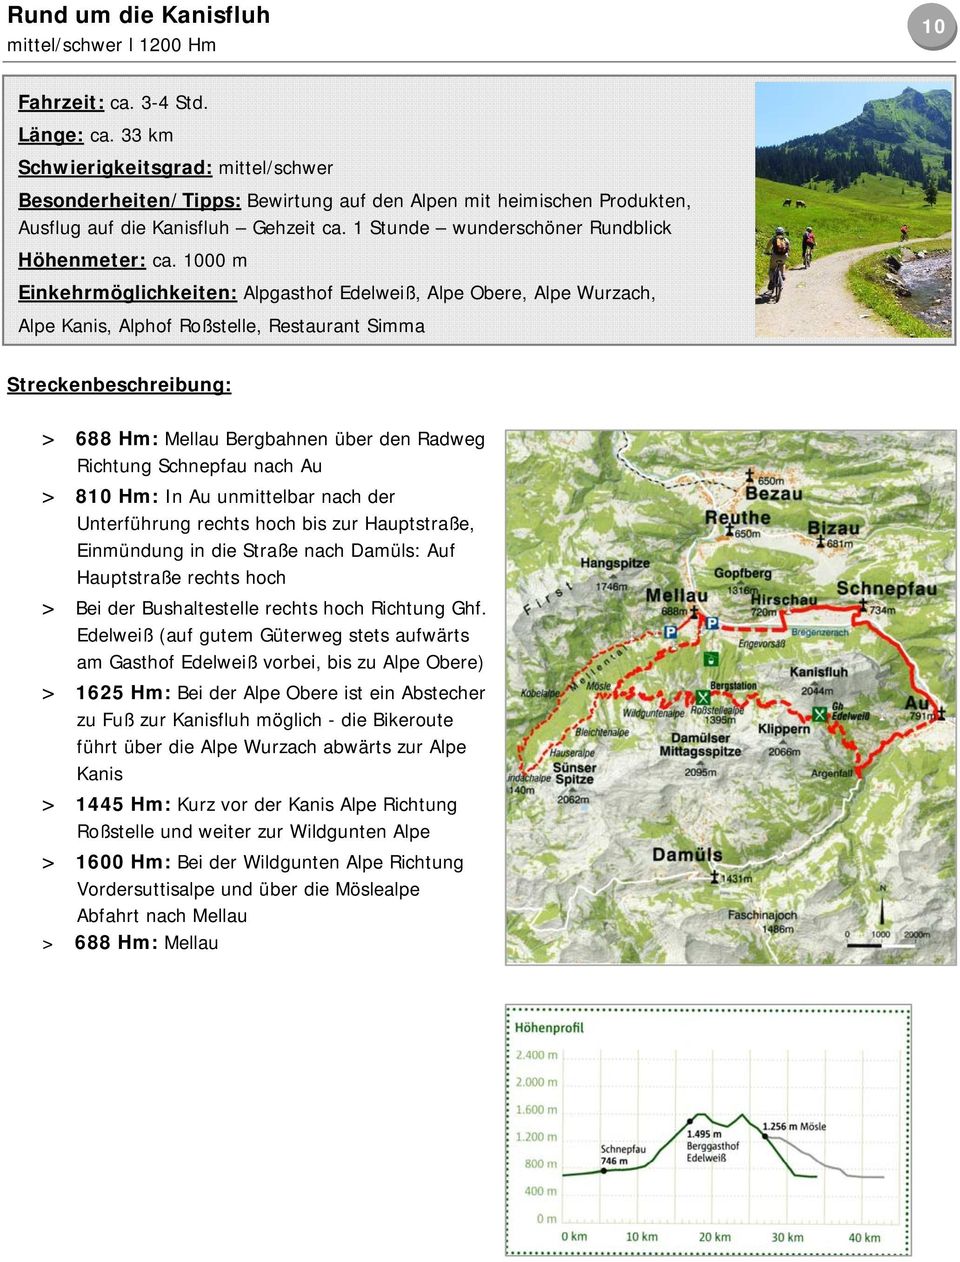 1000 m Einkehrmöglichkeiten: Alpgasthof Edelweiß, Alpe Obere, Alpe Wurzach, Alpe Kanis, Alphof Roßstelle, Restaurant Simma > 688 Hm: Mellau Bergbahnen über den Radweg Richtung Schnepfau nach Au > 810